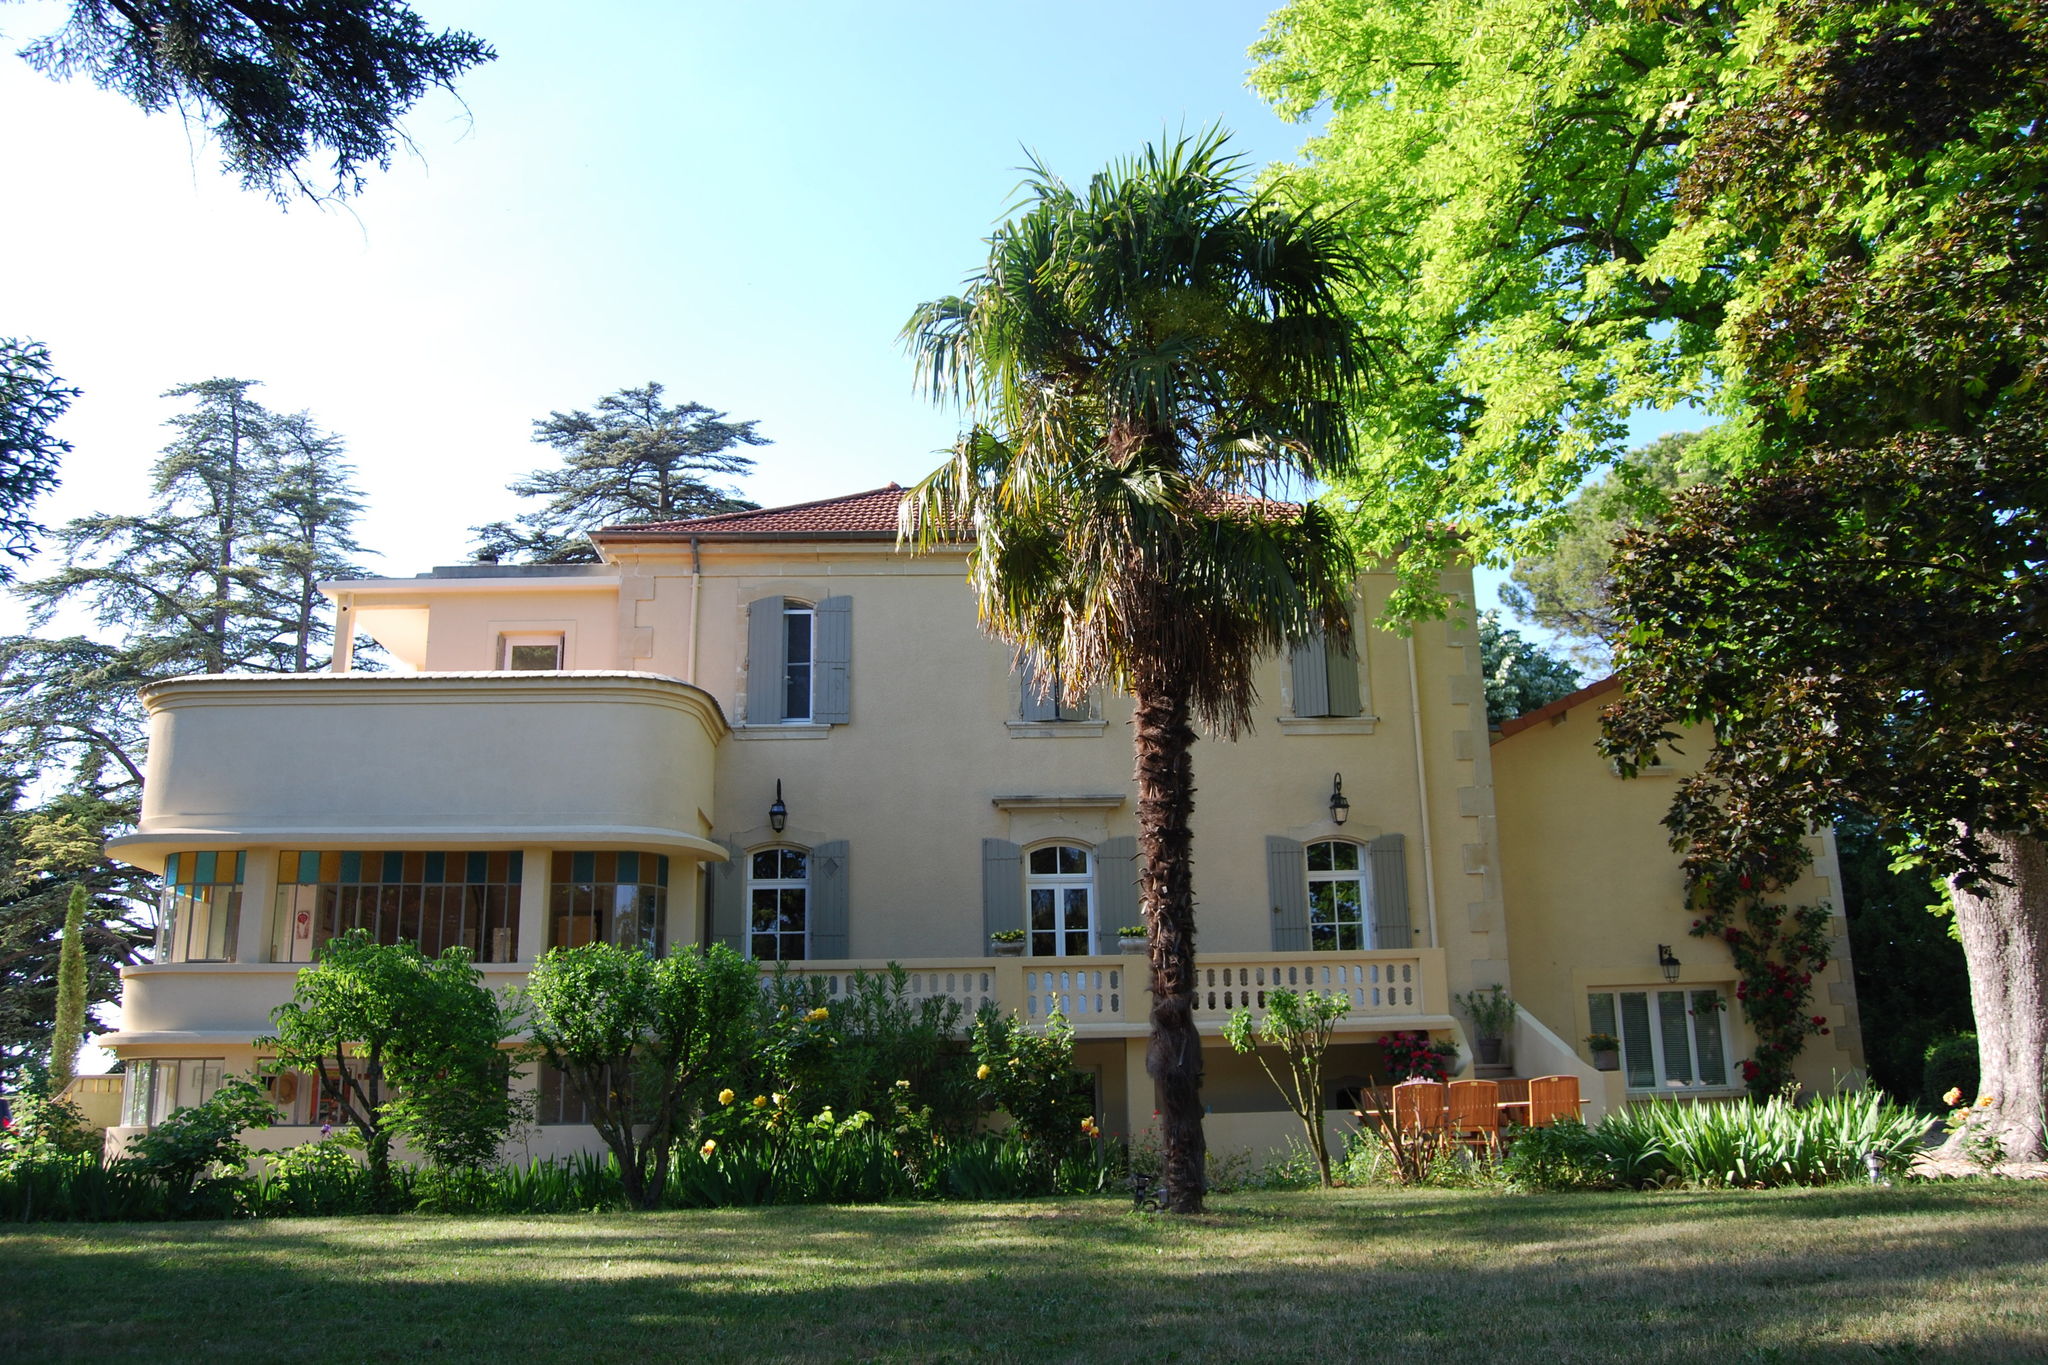 Gemütliches Landhaus in der Provence, Frankreich mit Pool